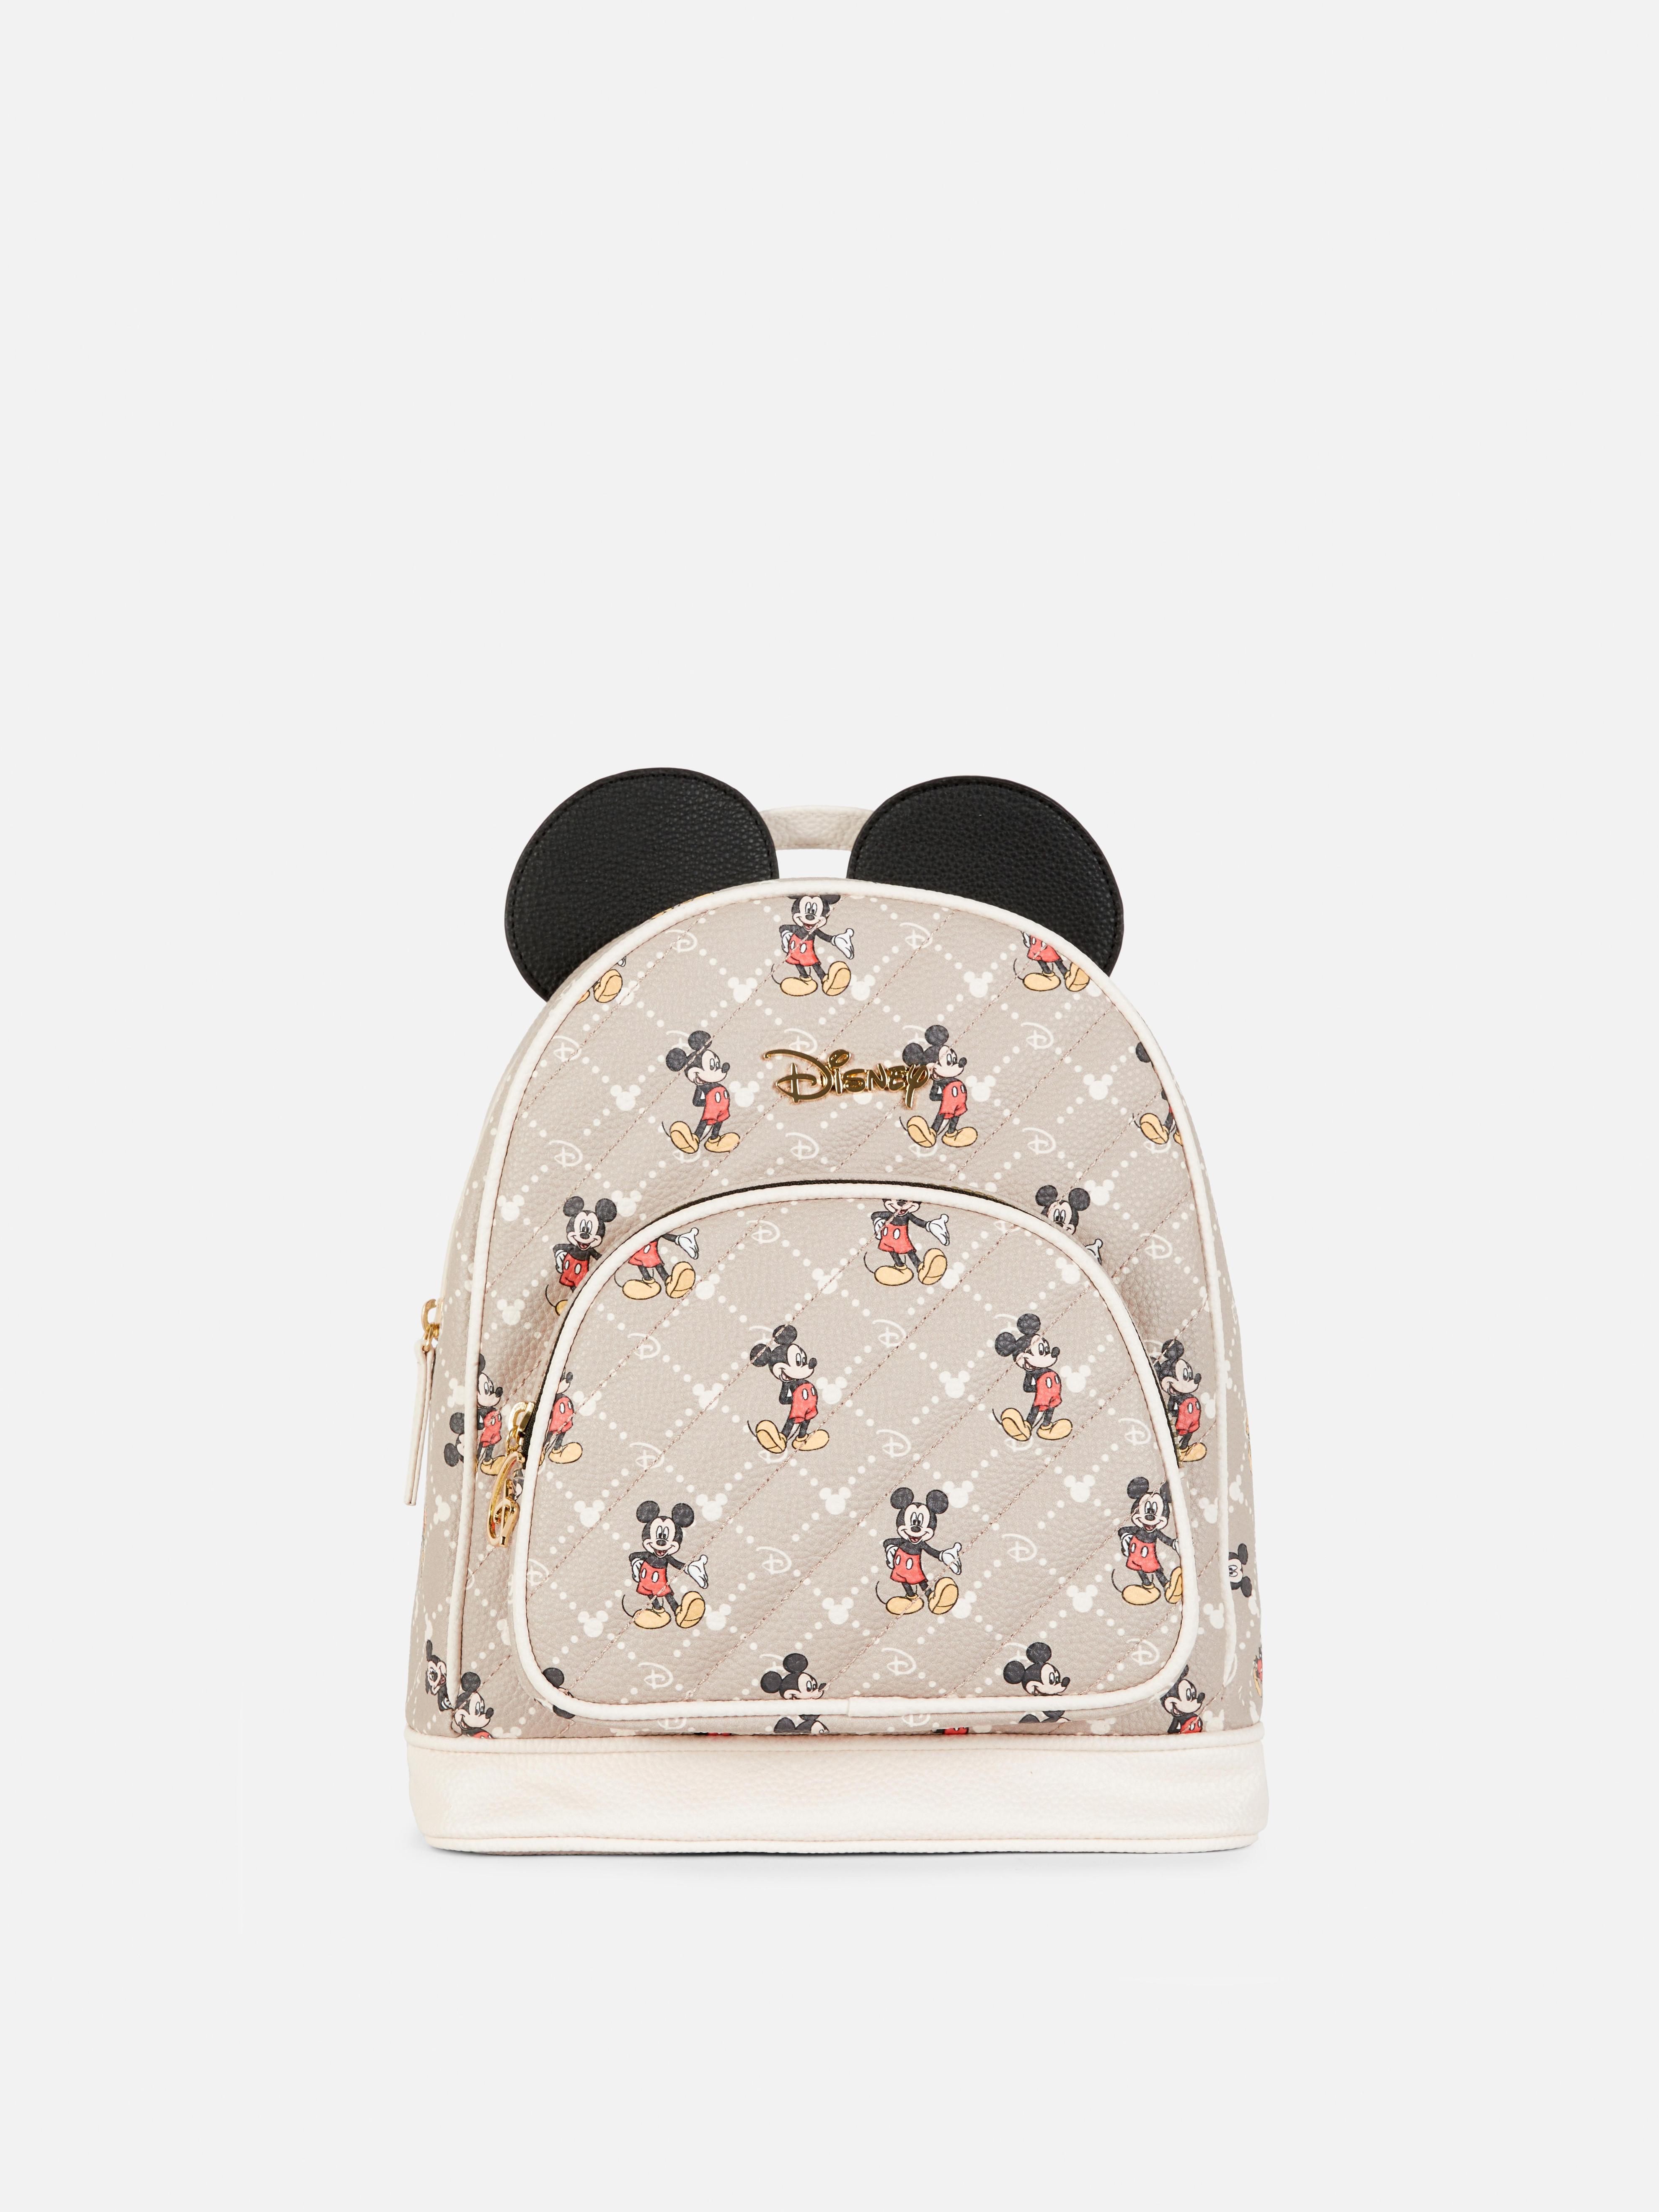 „Disney Micky Maus“ Rucksack mit Monogramm für 19€ in Primark